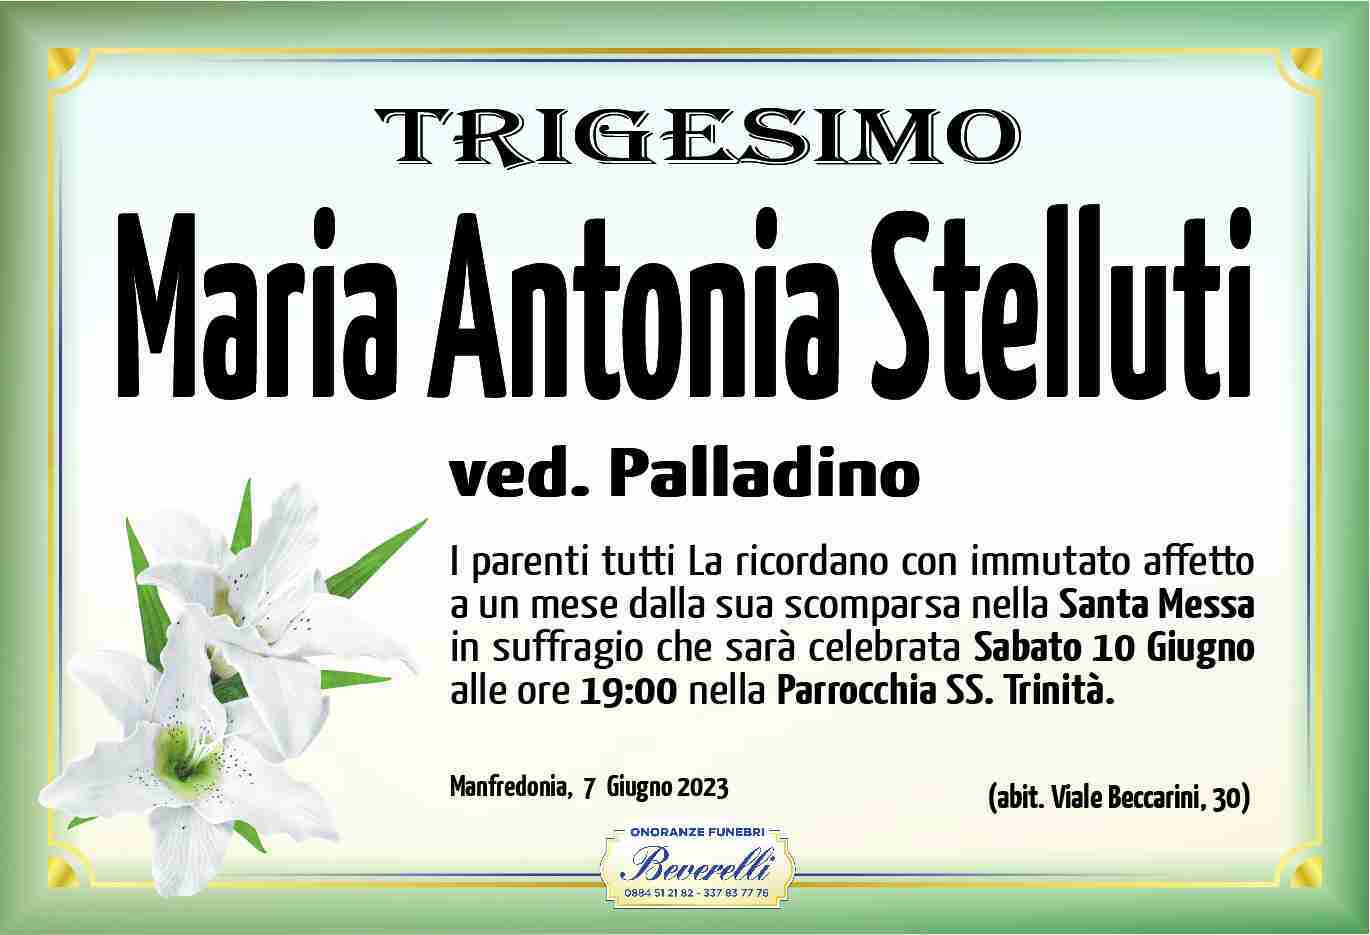 Maria Antonia Stelluti